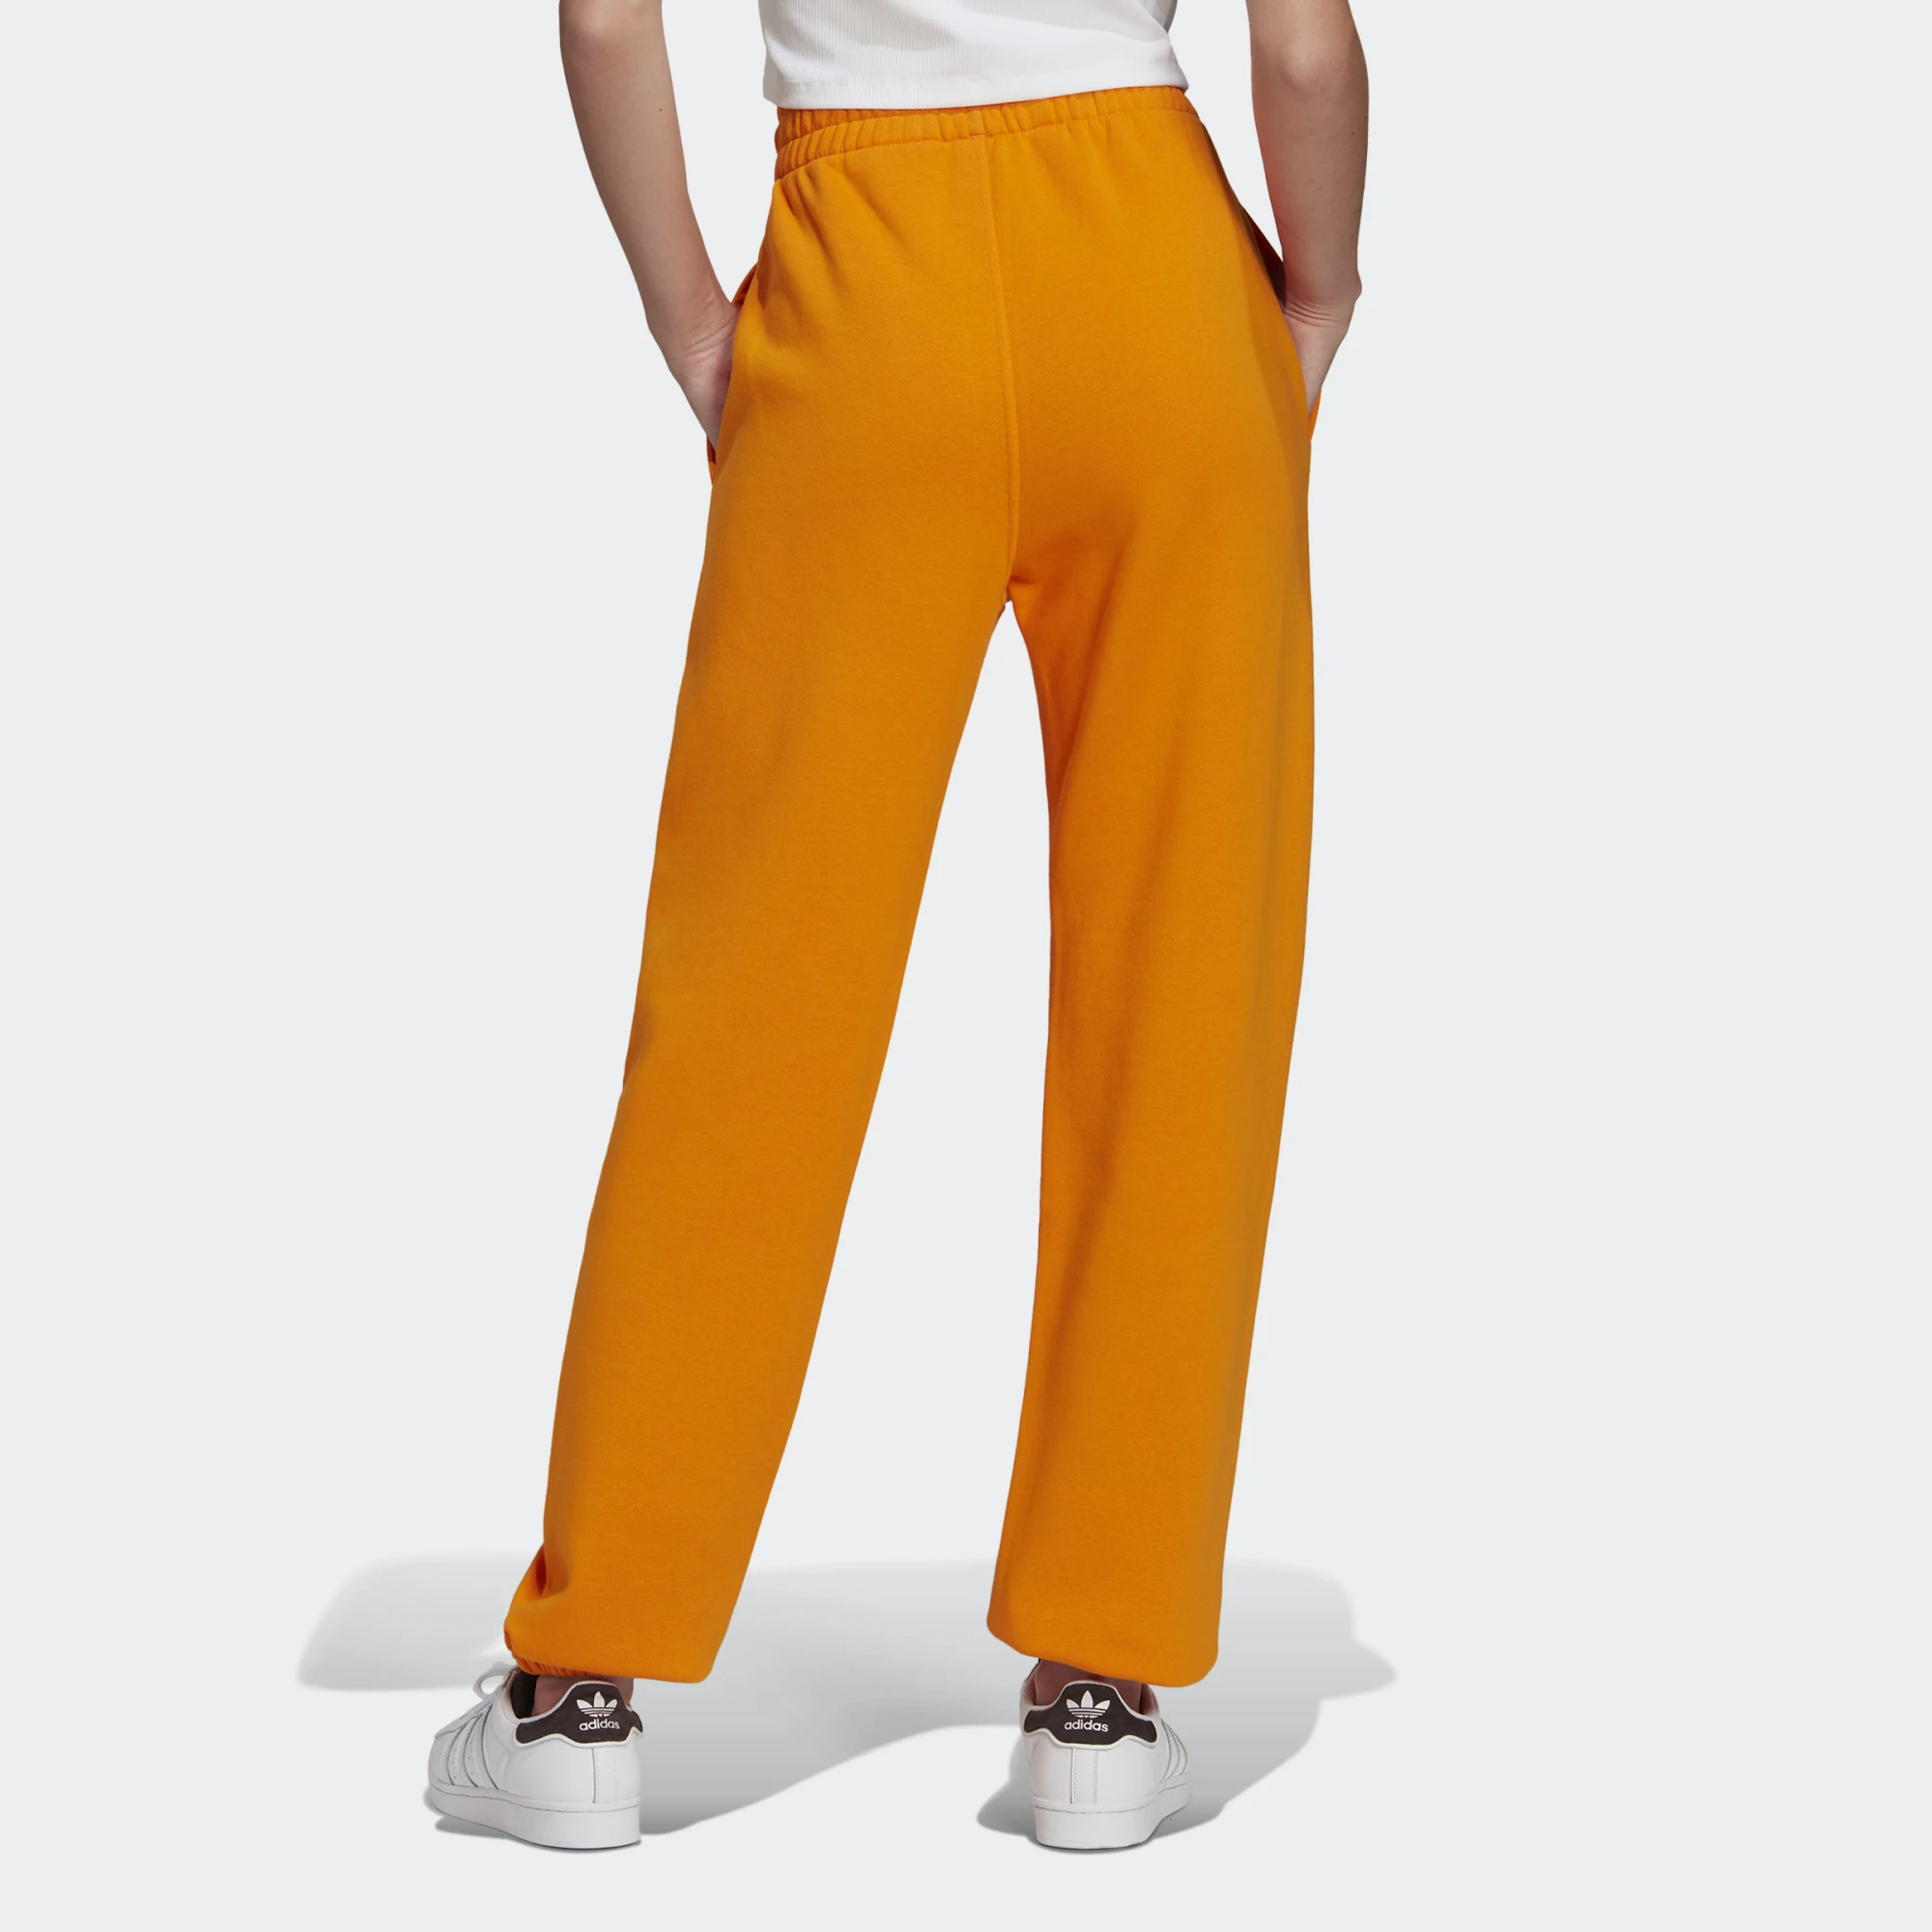 Donna Abbigliamento da Jeans Pantaloneadidas Originals in Pile di colore Arancione 